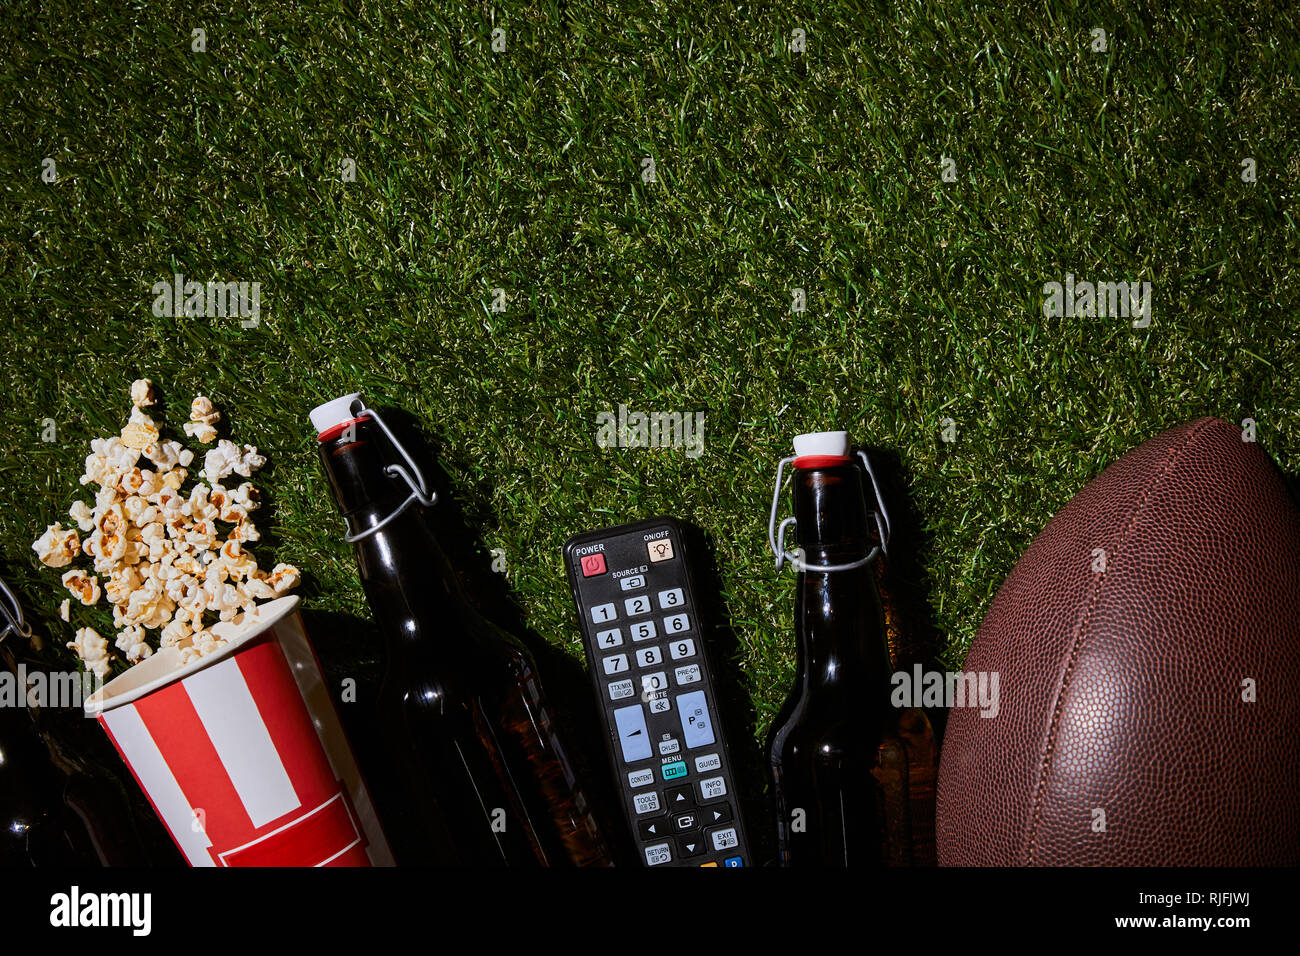 Piatto di laici bottiglie marrone nei pressi di pop-corn, il controllo remoto e la sfera sdraiati sull'erba Foto Stock